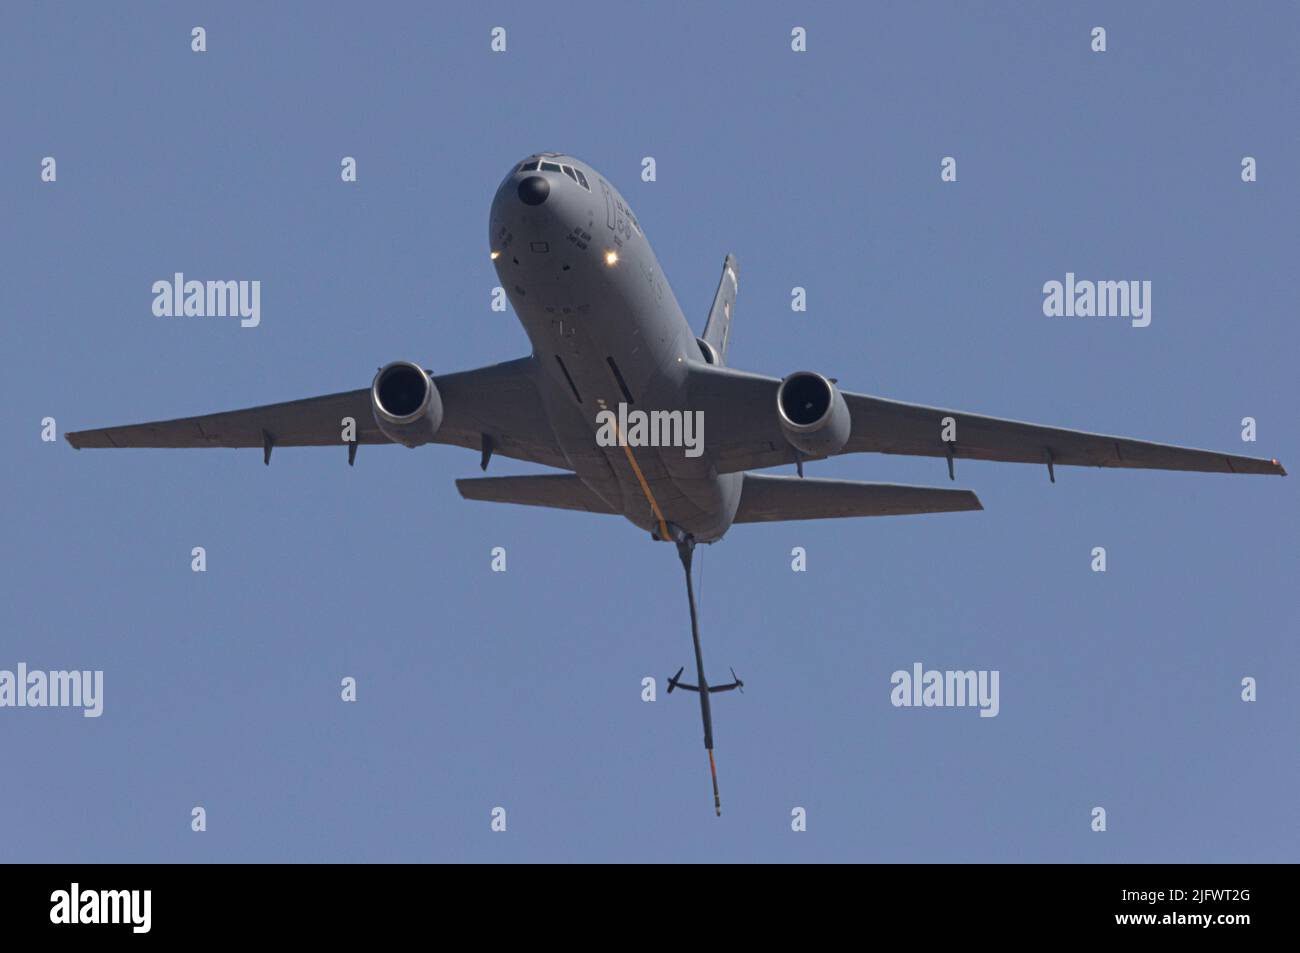 Nahaufnahme eines Air-Tankers, der während der Capital Air Show in Kalifornien fliegt, mit einem klaren blauen Himmel im Hintergrund Stockfoto